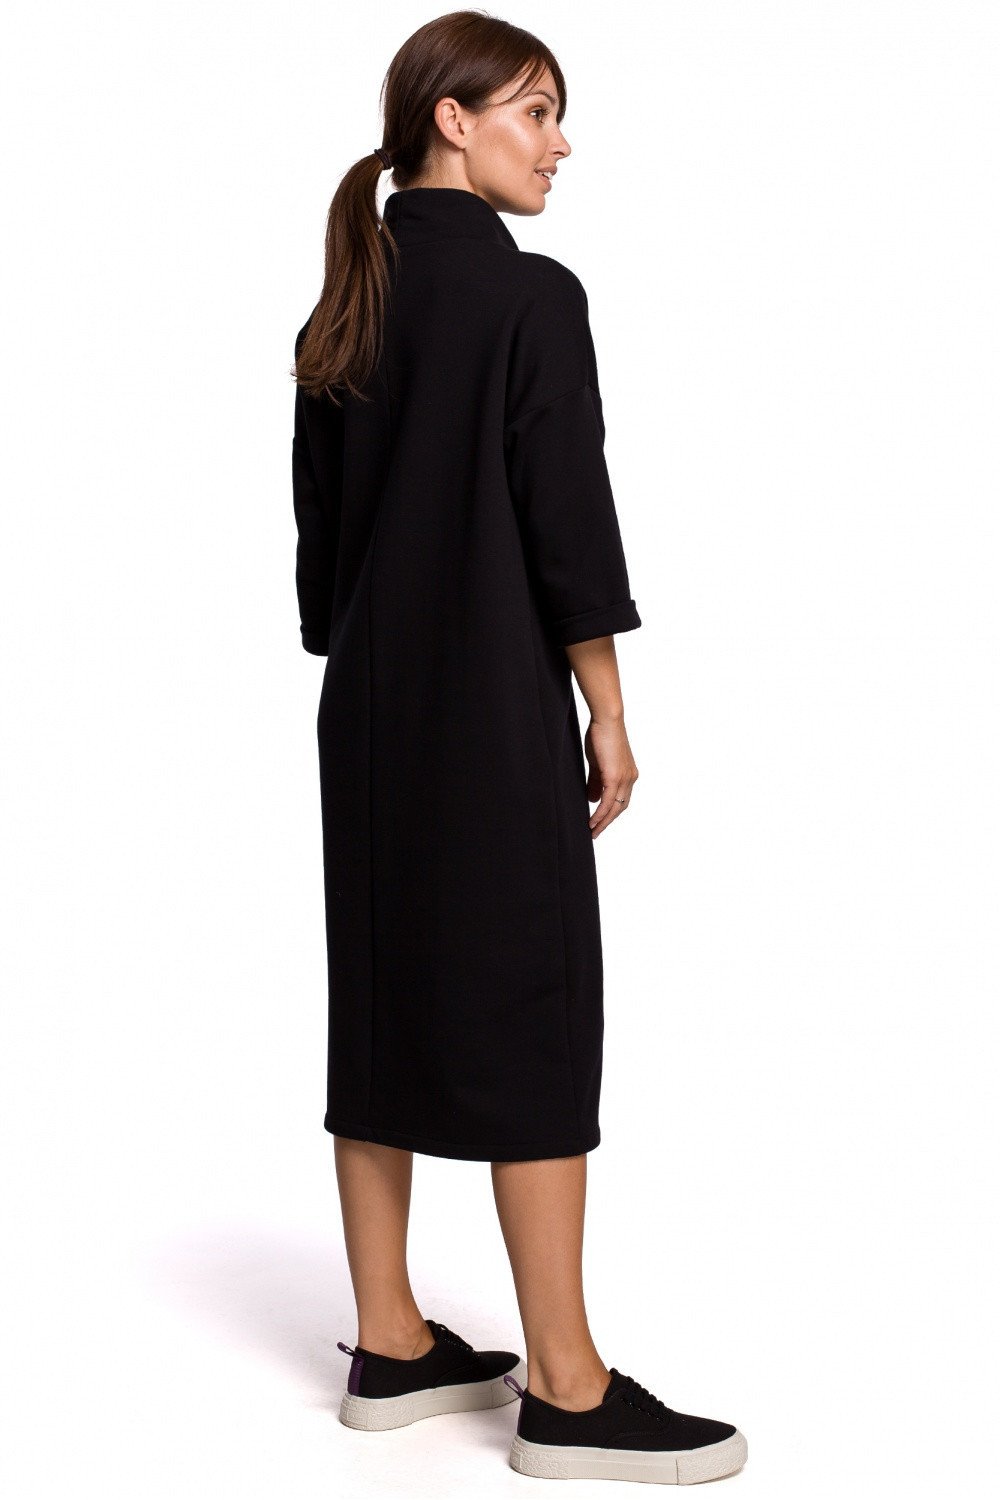 Dámské šaty model 17688377 černá S/M - BeWear